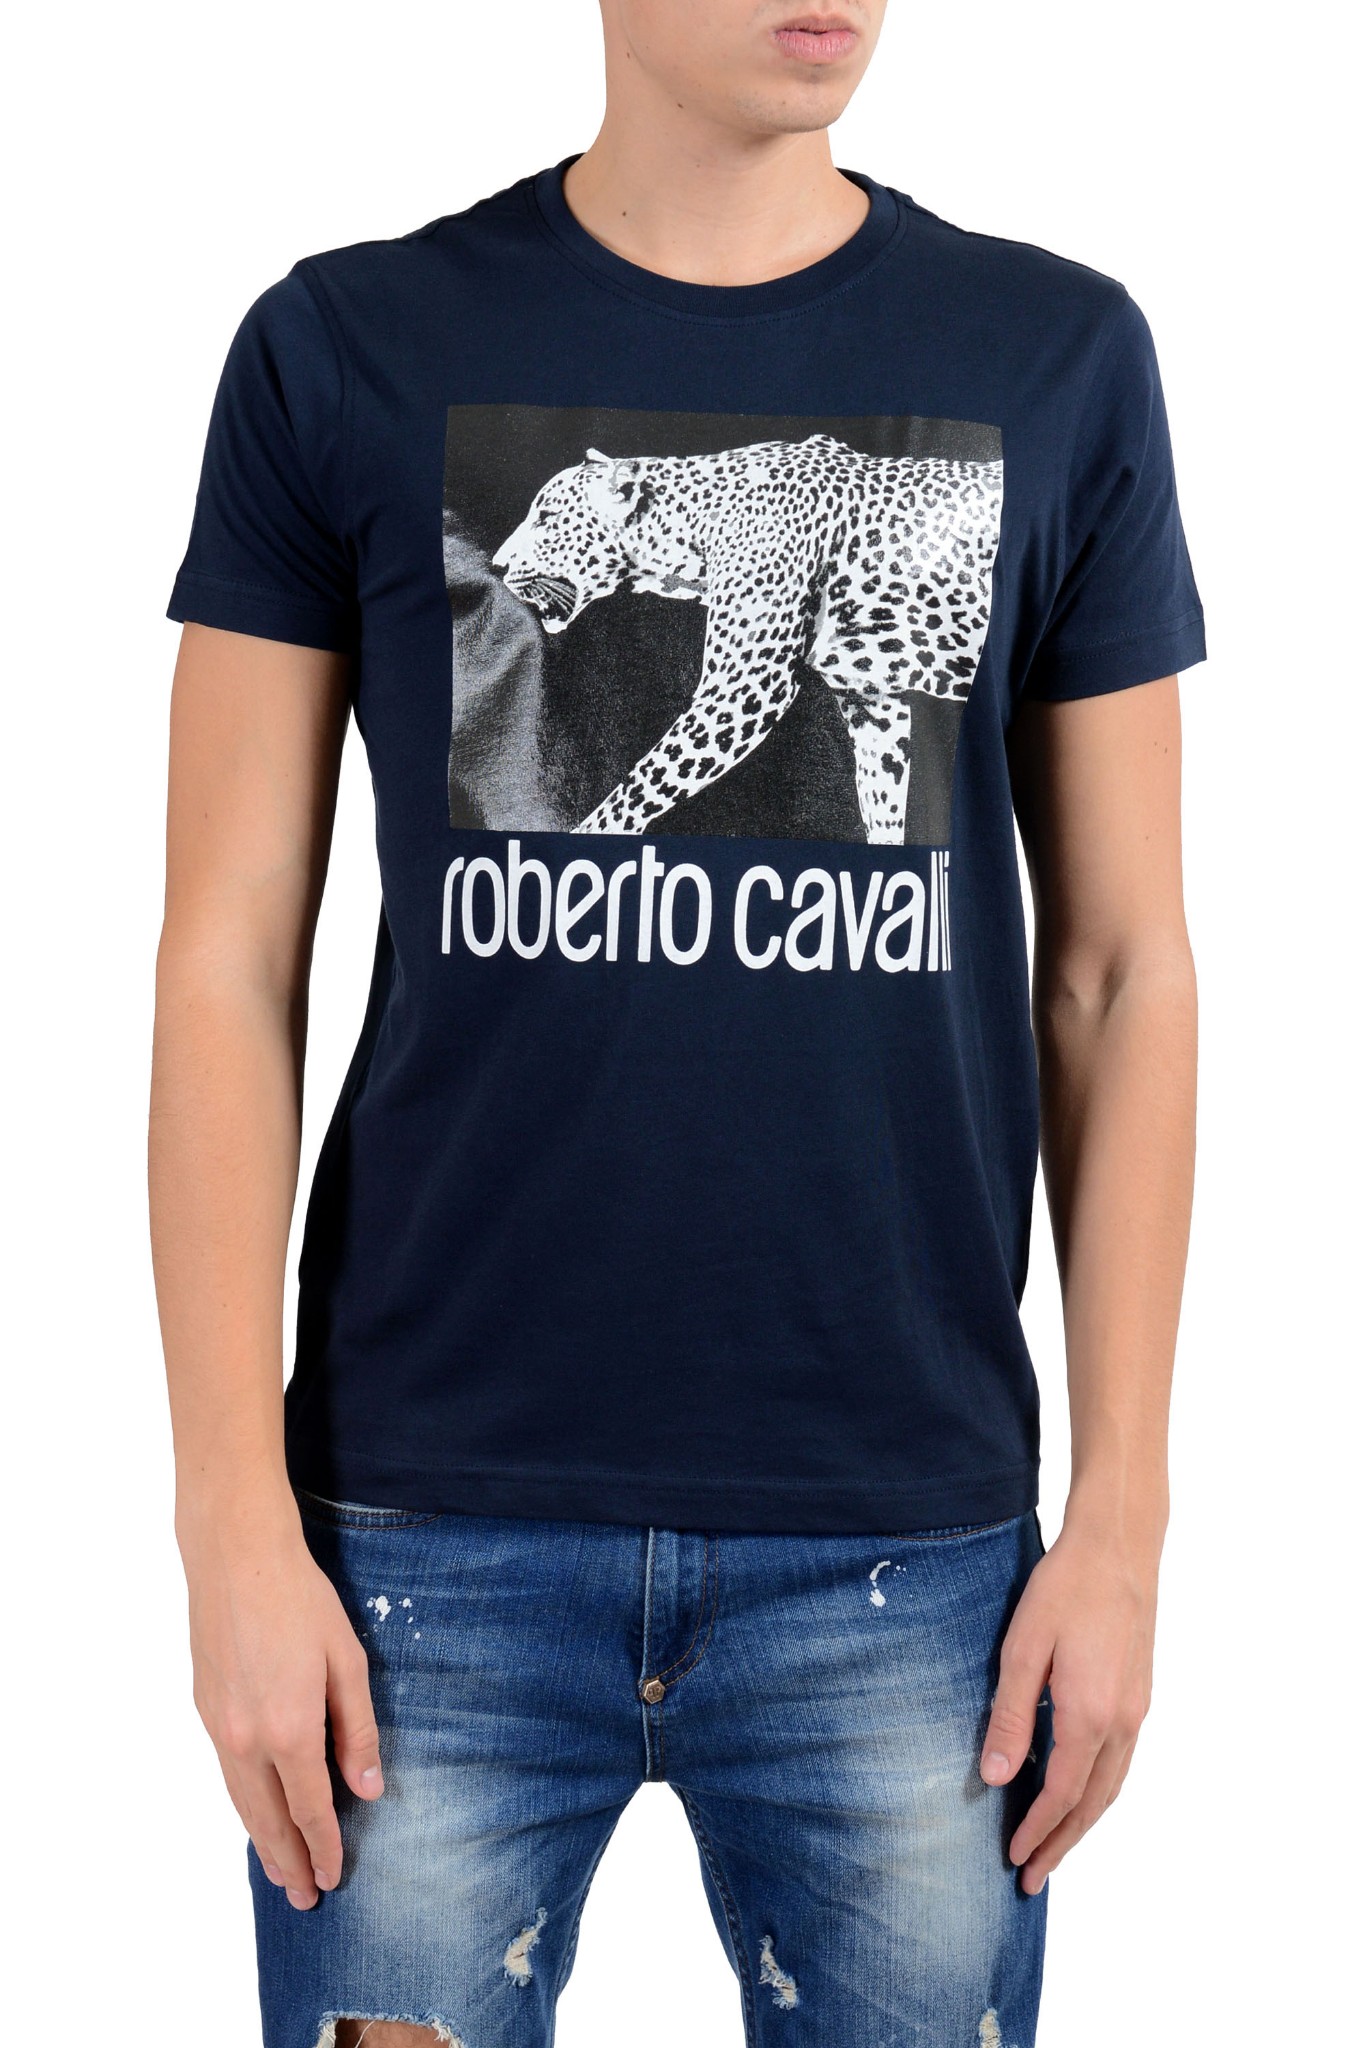 Roberto Cavalli Men's Blue Graphic Leopard Crewneck T-Shirt Size S M L ...